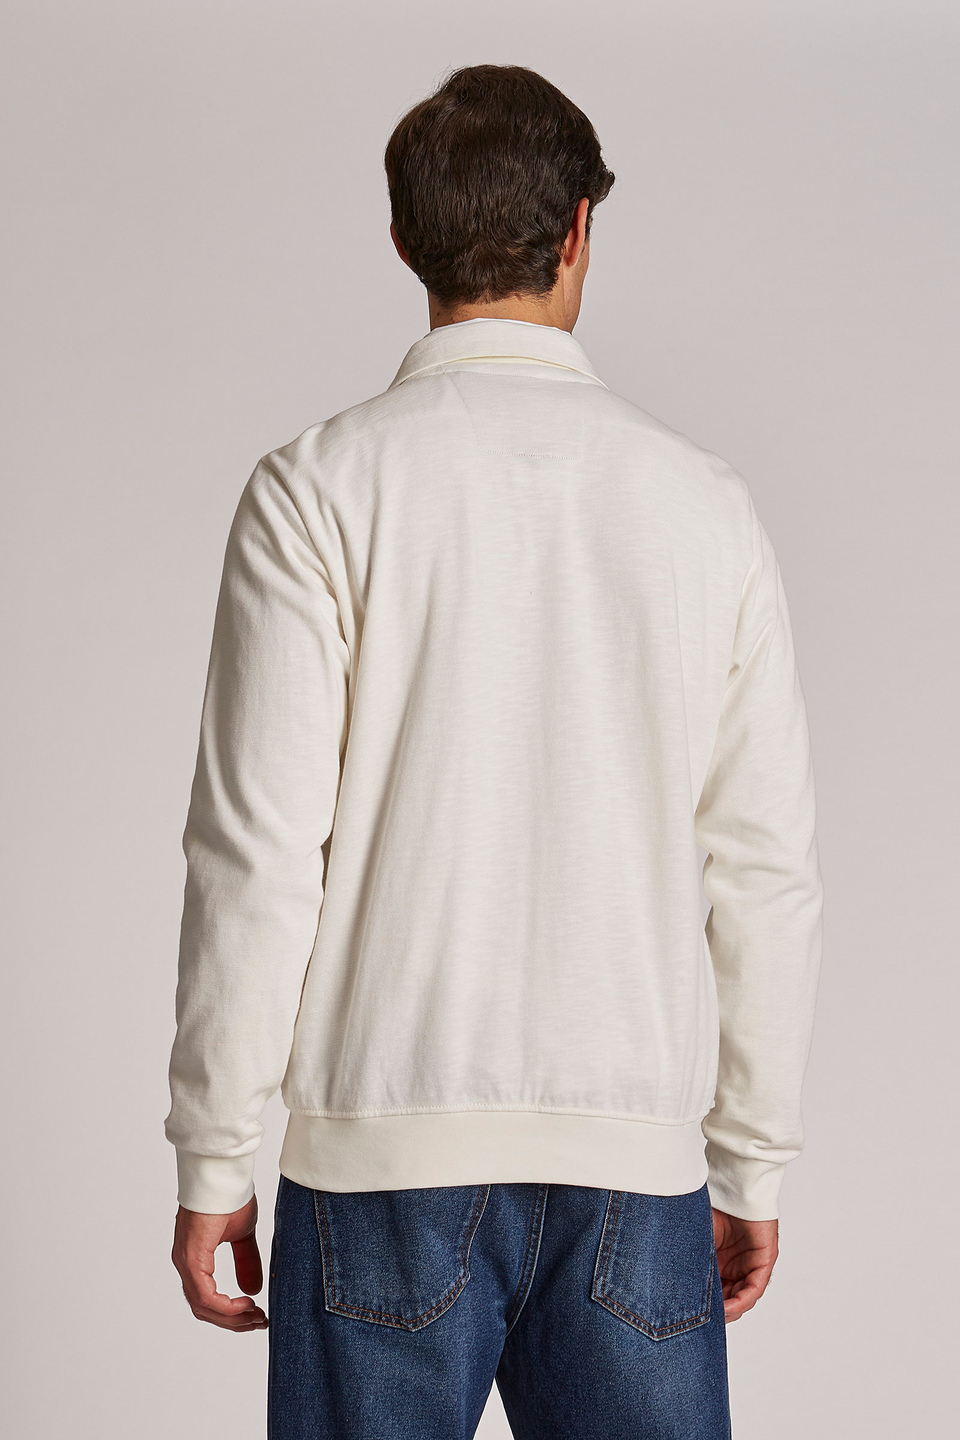 Sweat-shirt homme 100% coton coupe classique - La Martina - Official Online Shop